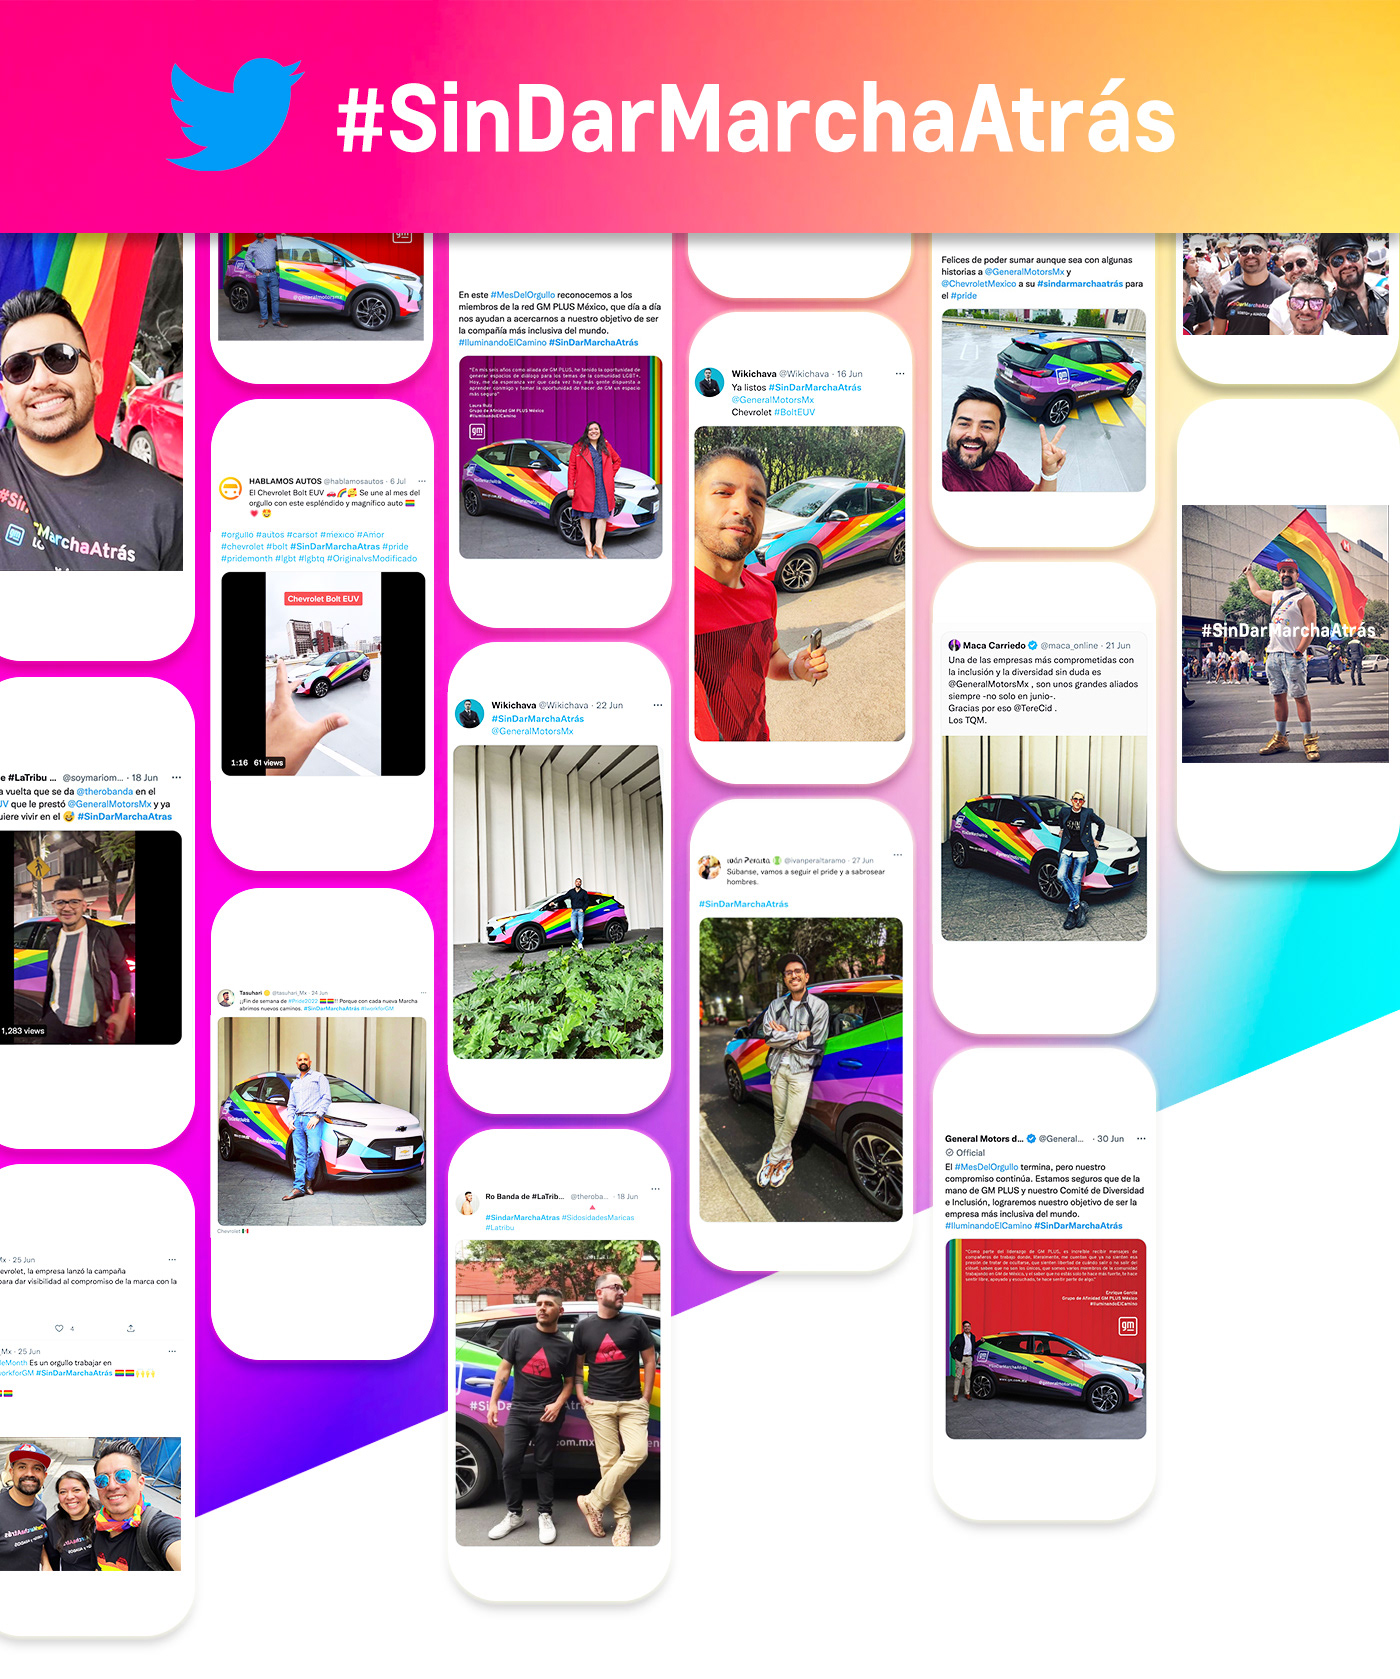 Advertising  camaro campaign chevrolet gay LGBT orgullo pride Pride Parade rainbow